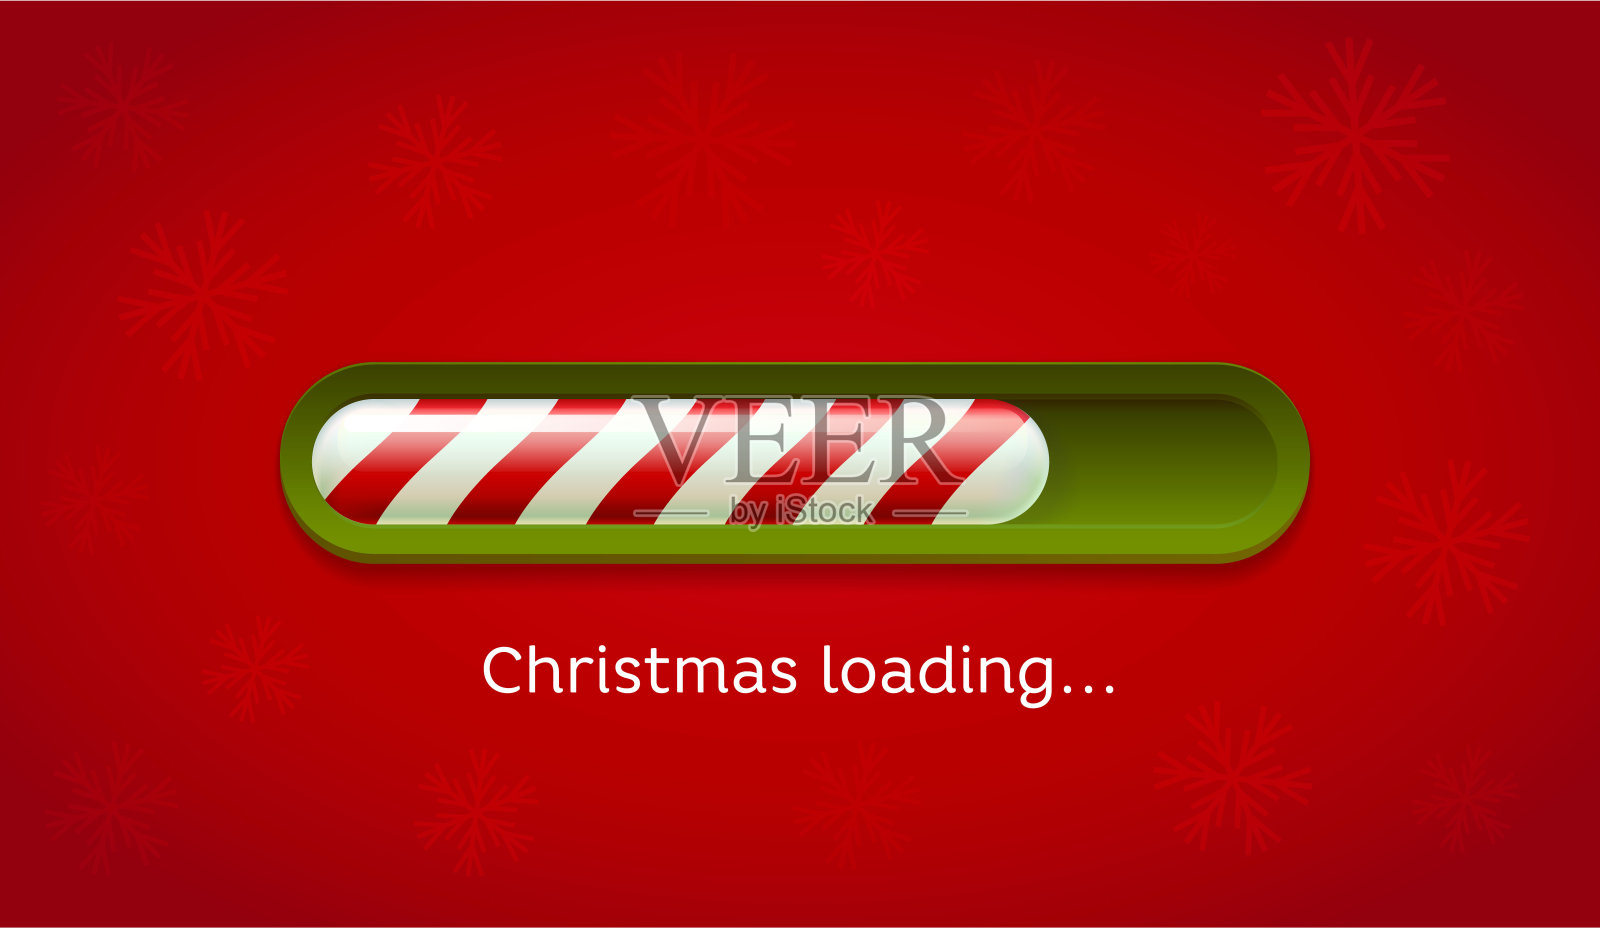 加载圣诞节。红色和绿色的网条在暗红色的背景与雪花插画图片素材